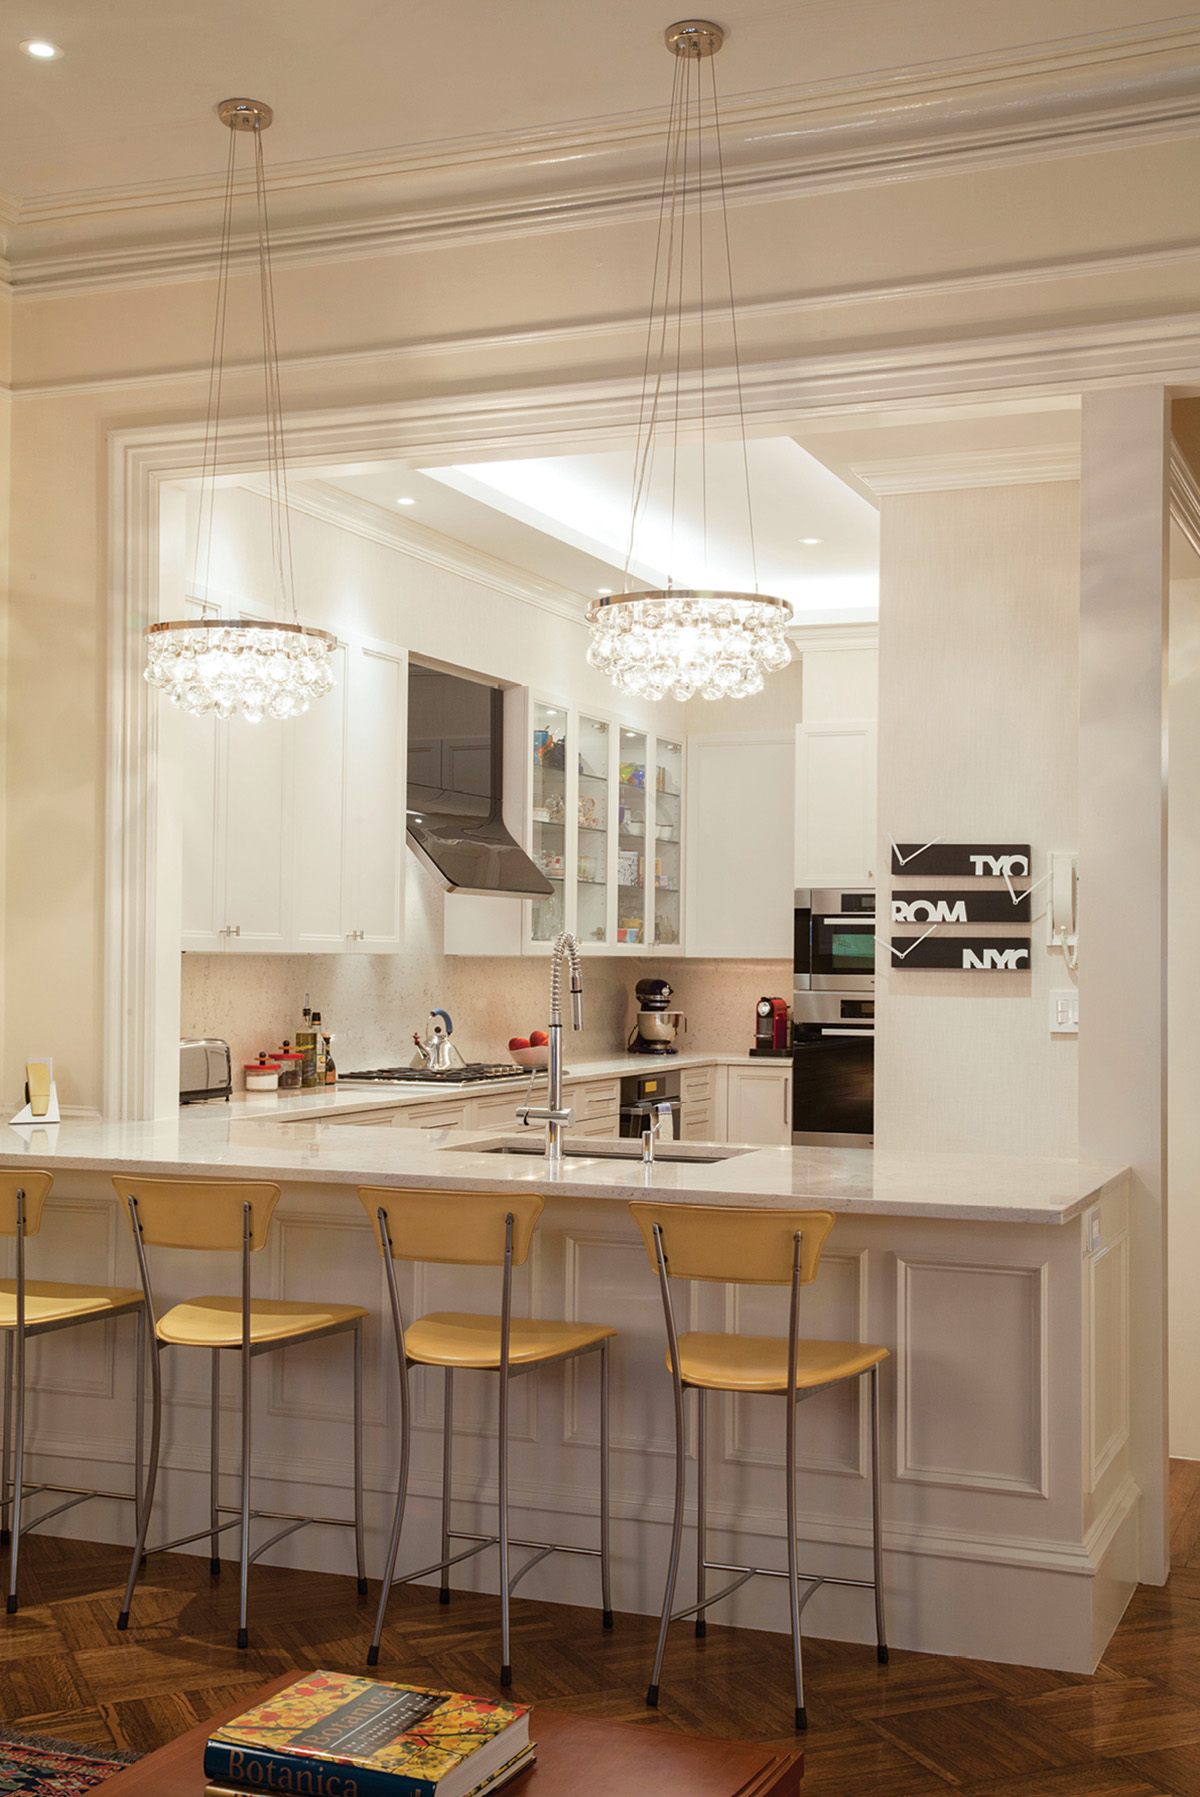 back bay kitchen redesign renovation remodel 1